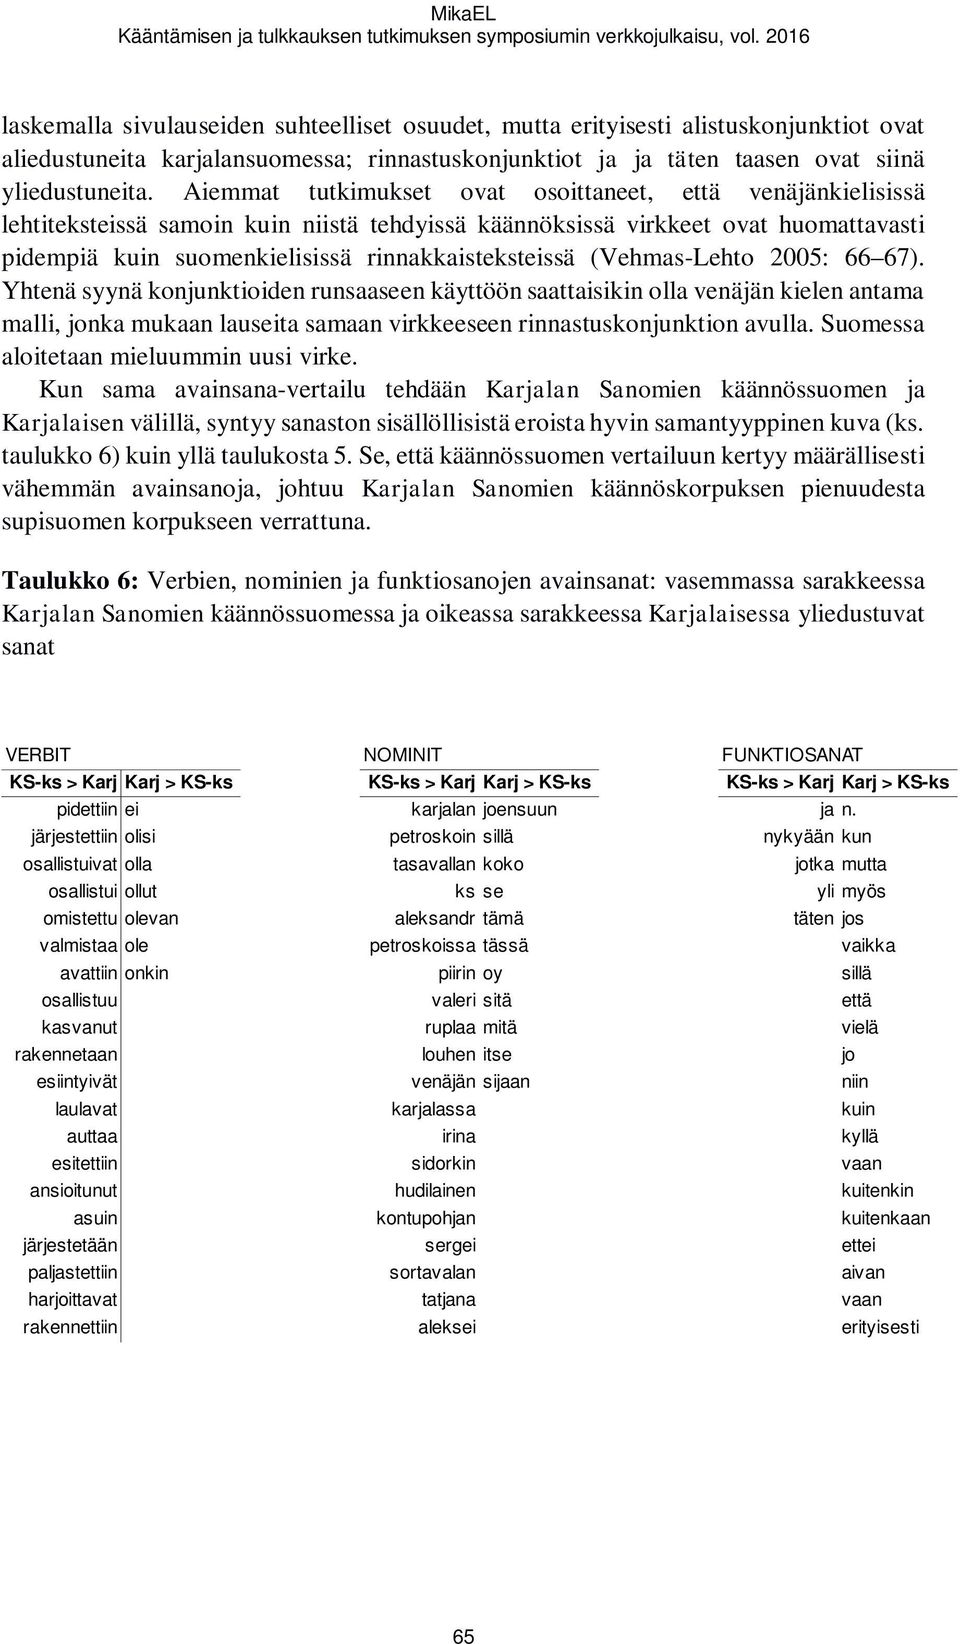 Aiemmat tutkimukset ovat osoittaneet, että venäjänkielisissä lehtiteksteissä samoin kuin niistä tehdyissä käännöksissä virkkeet ovat huomattavasti pidempiä kuin suomenkielisissä rinnakkaisteksteissä